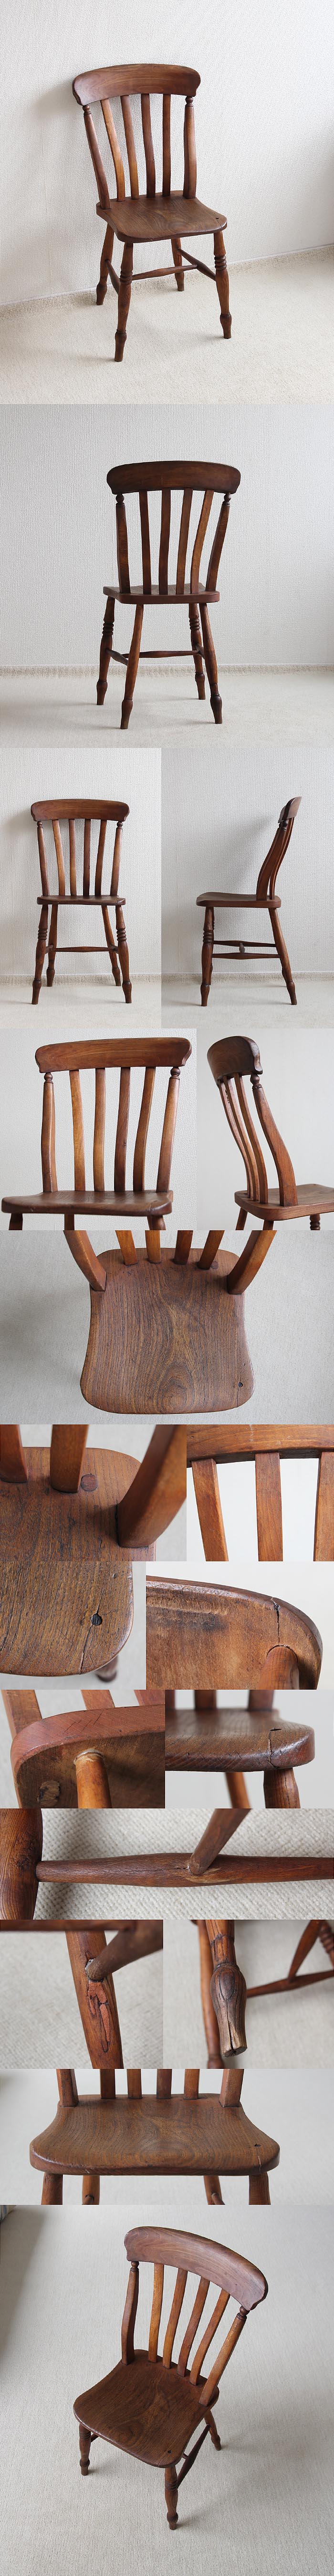 イギリス アンティーク ラスバックチェア キッチンチェア 椅子 古木 家具「一枚板座面」V-441